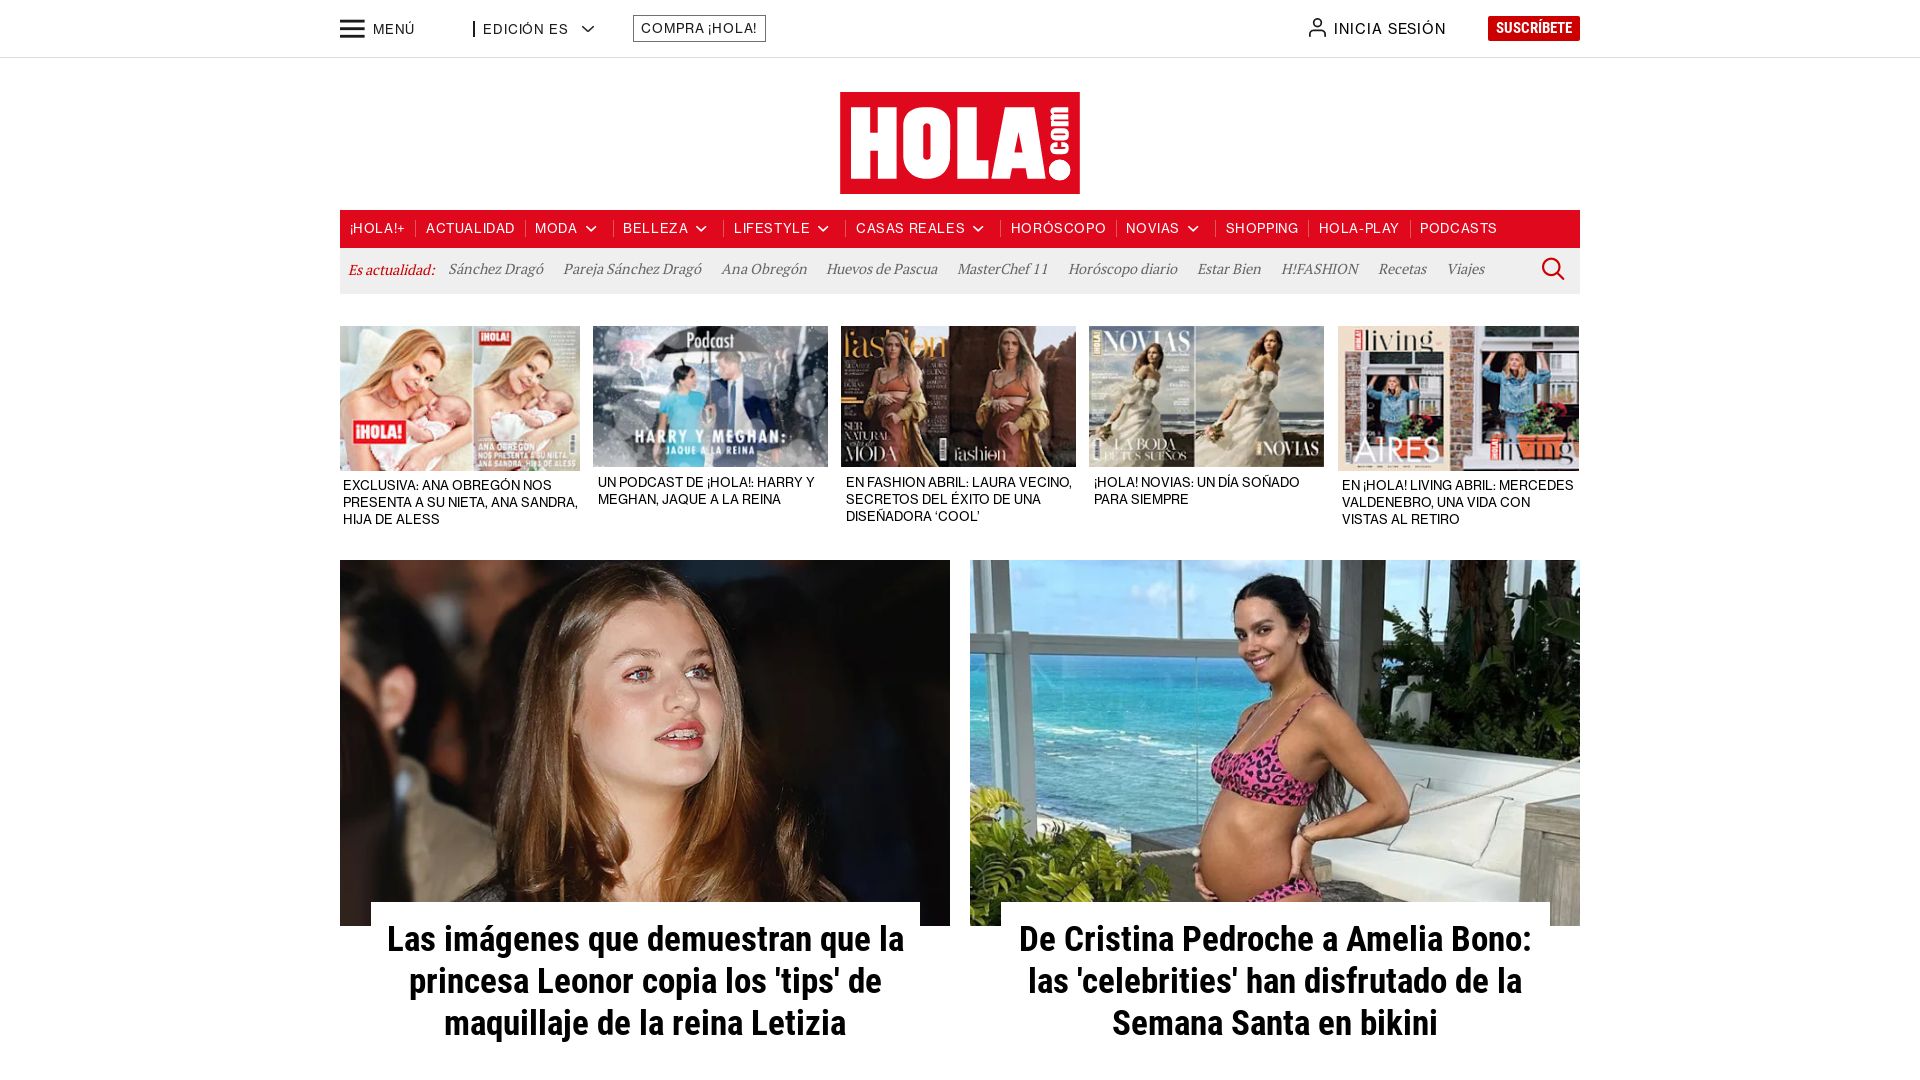 Status do site hola.com está   ONLINE